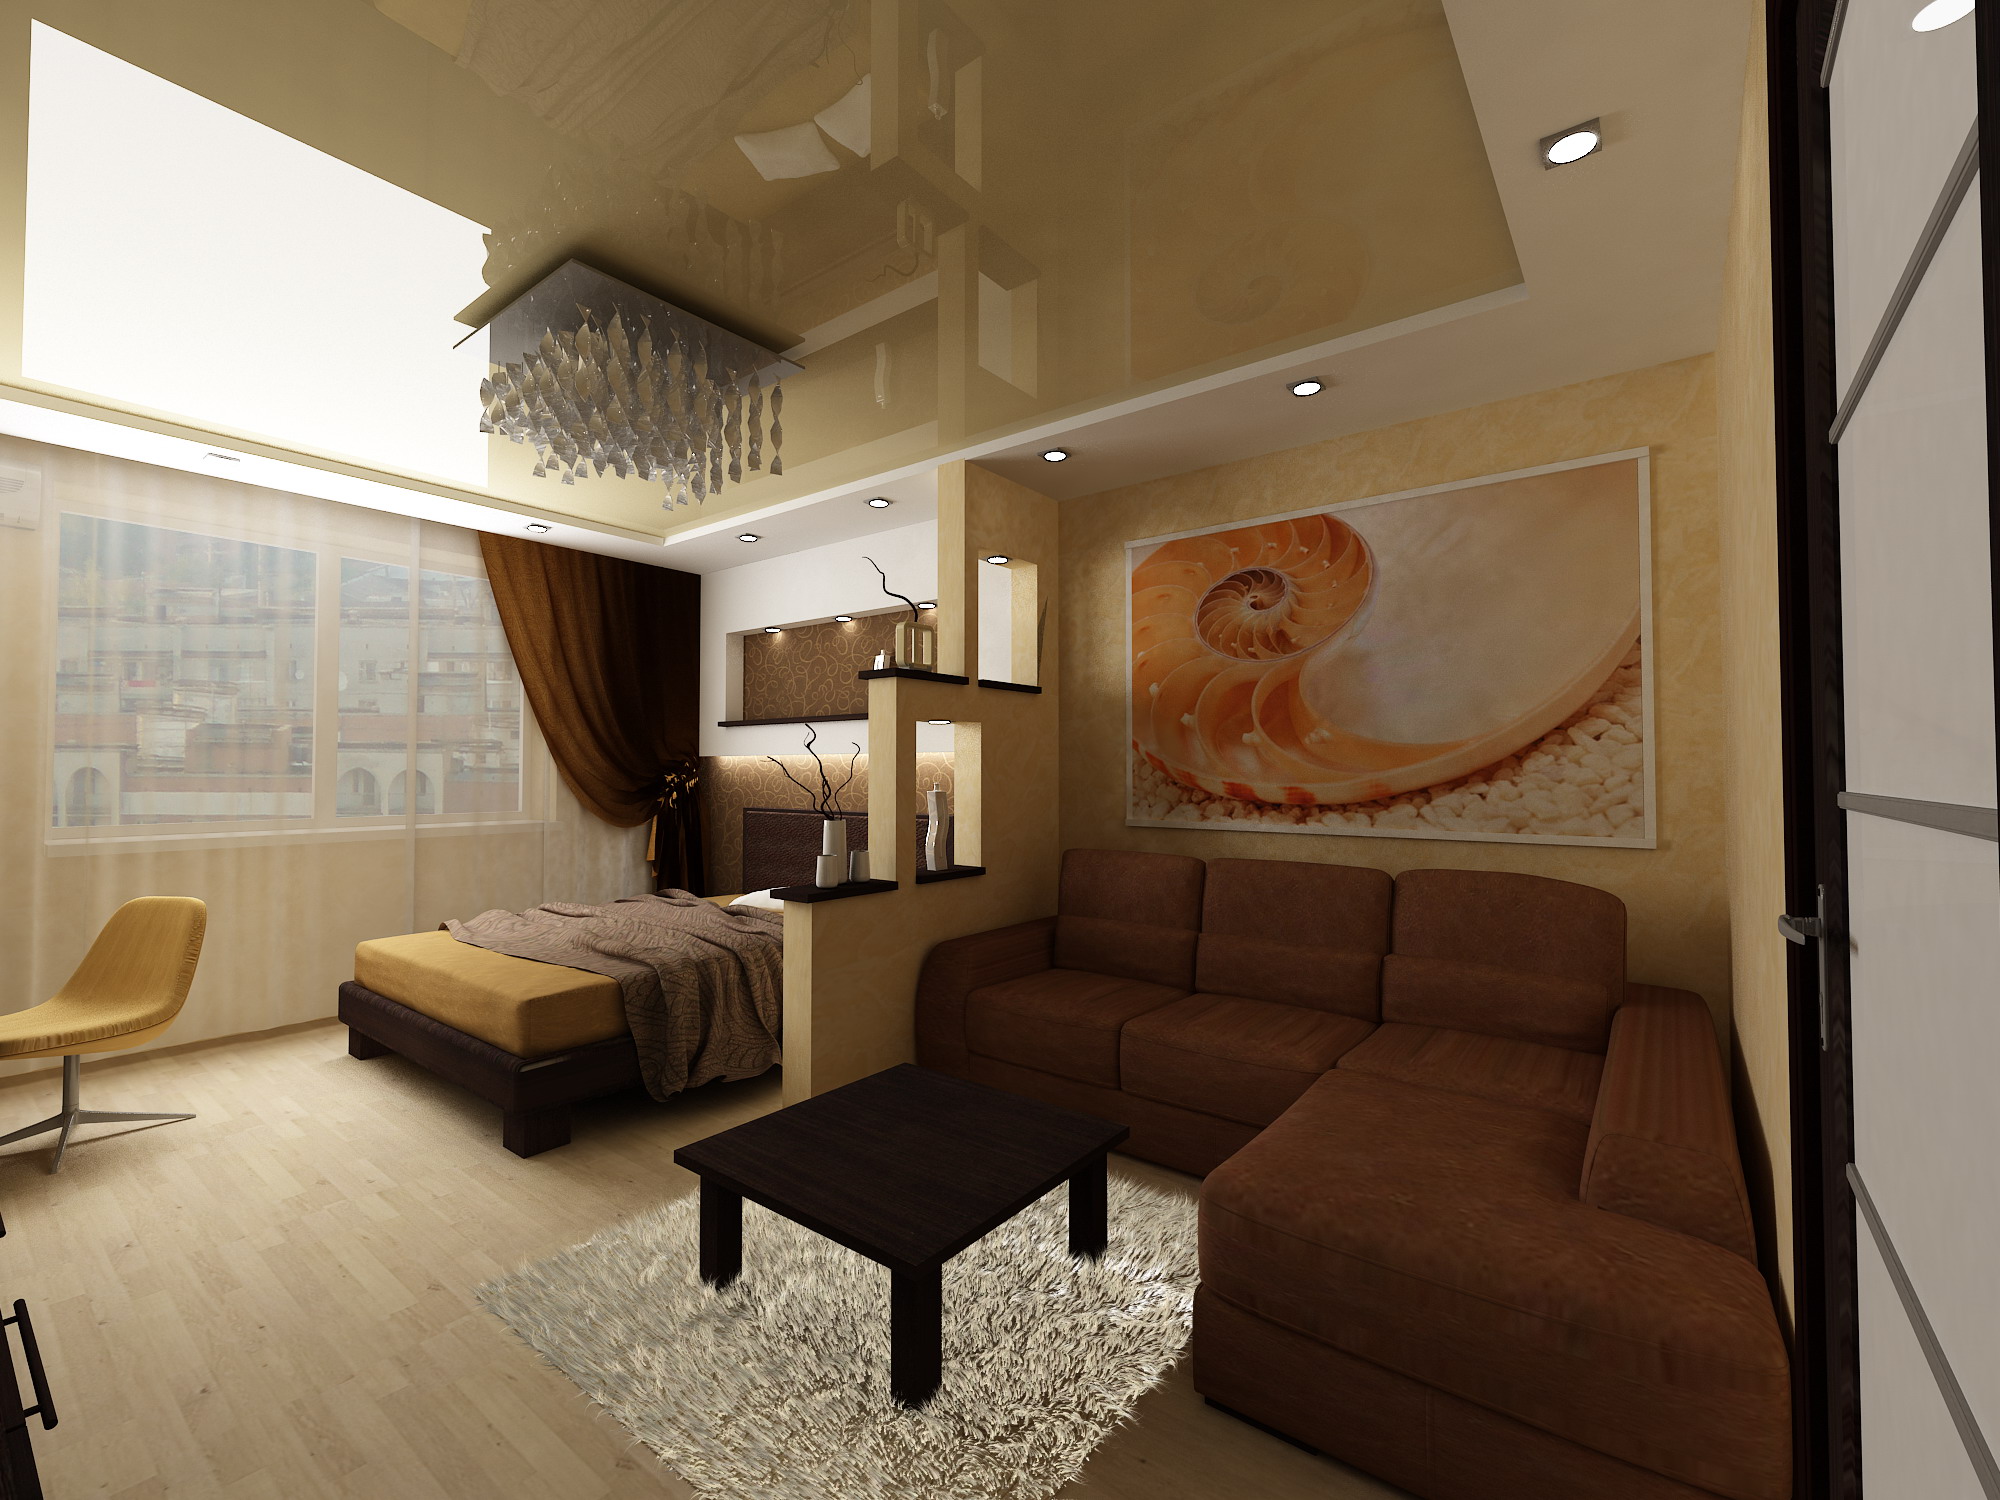 Проект комнаты гостиная спальня 18 кв м